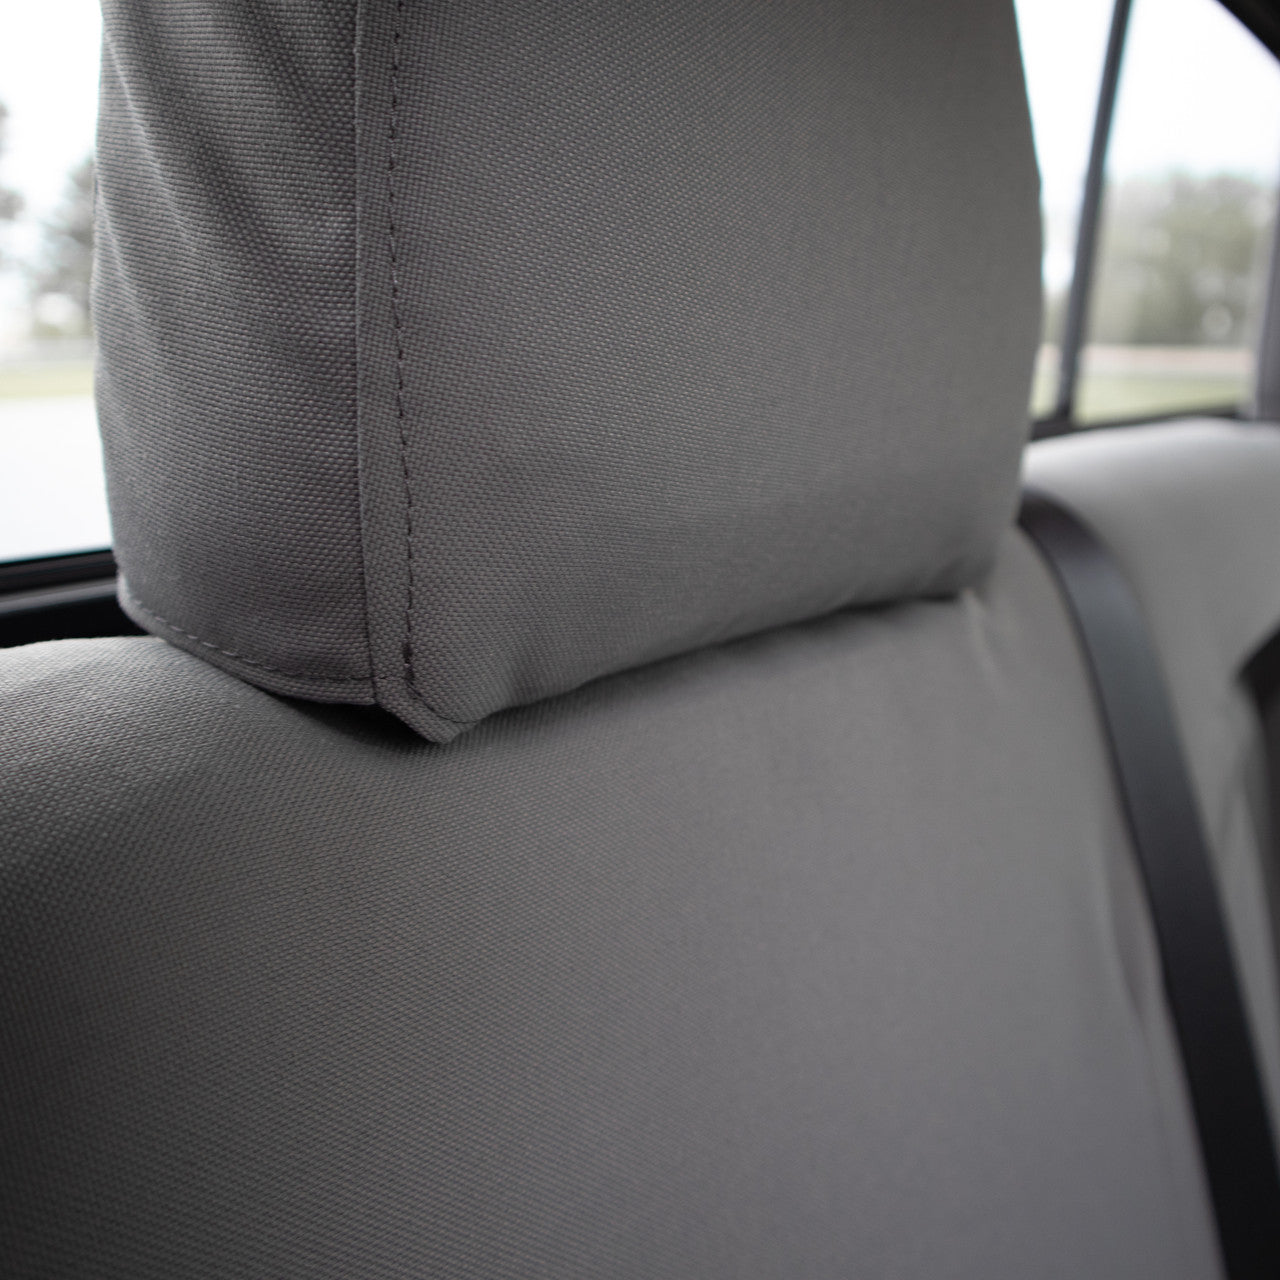 Headrest cover detail